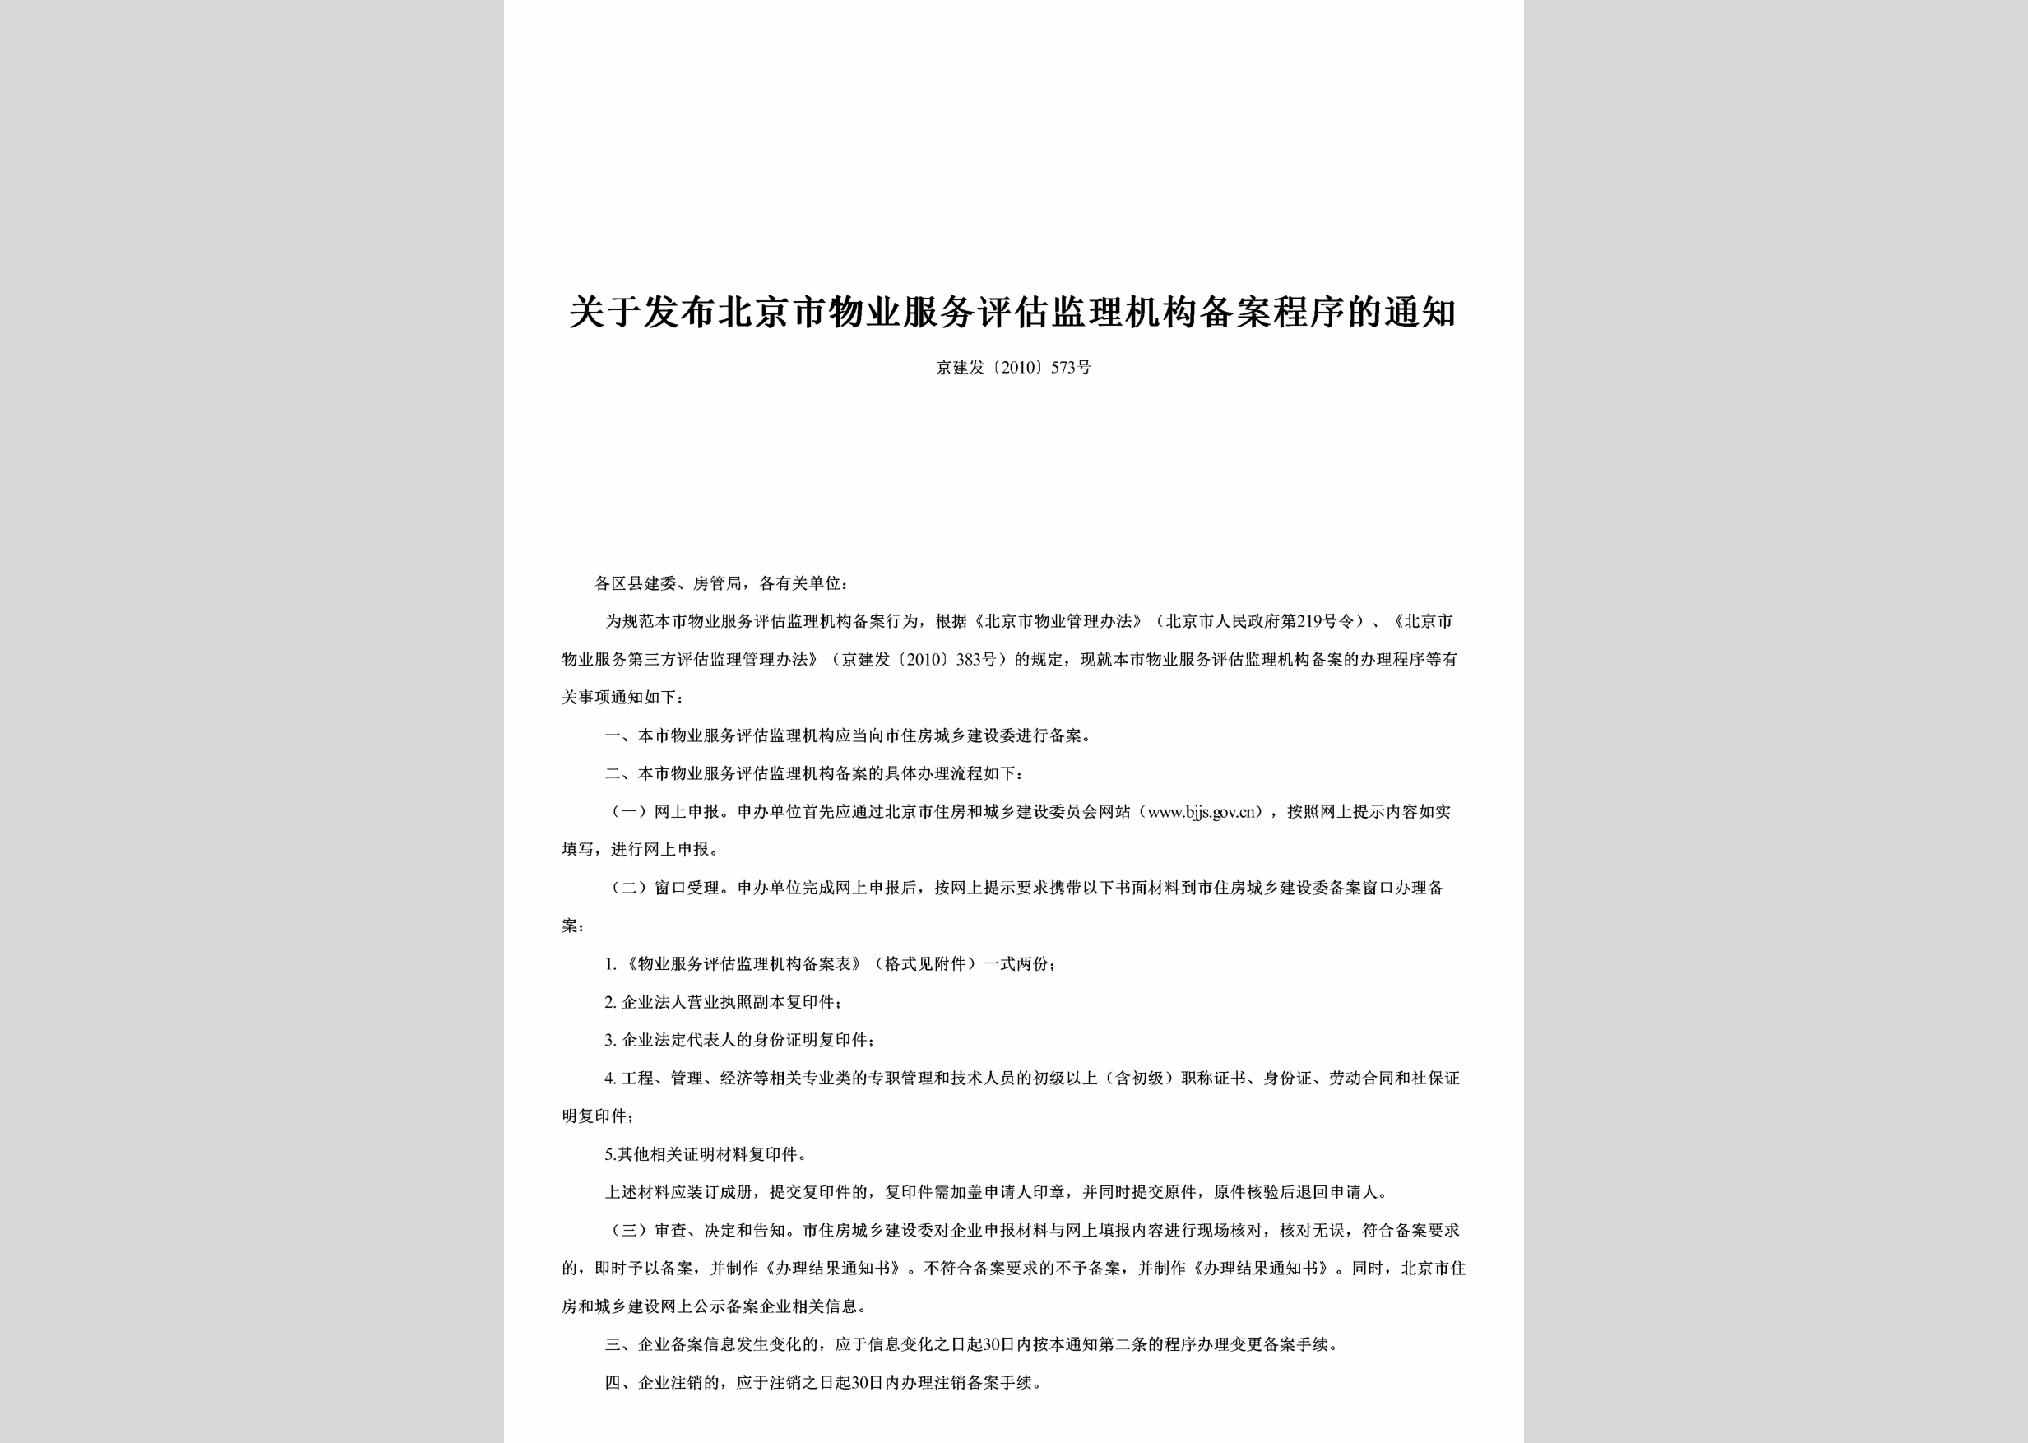 京建发[2010]573号：关于发布北京市物业服务评估监理机构备案程序的通知